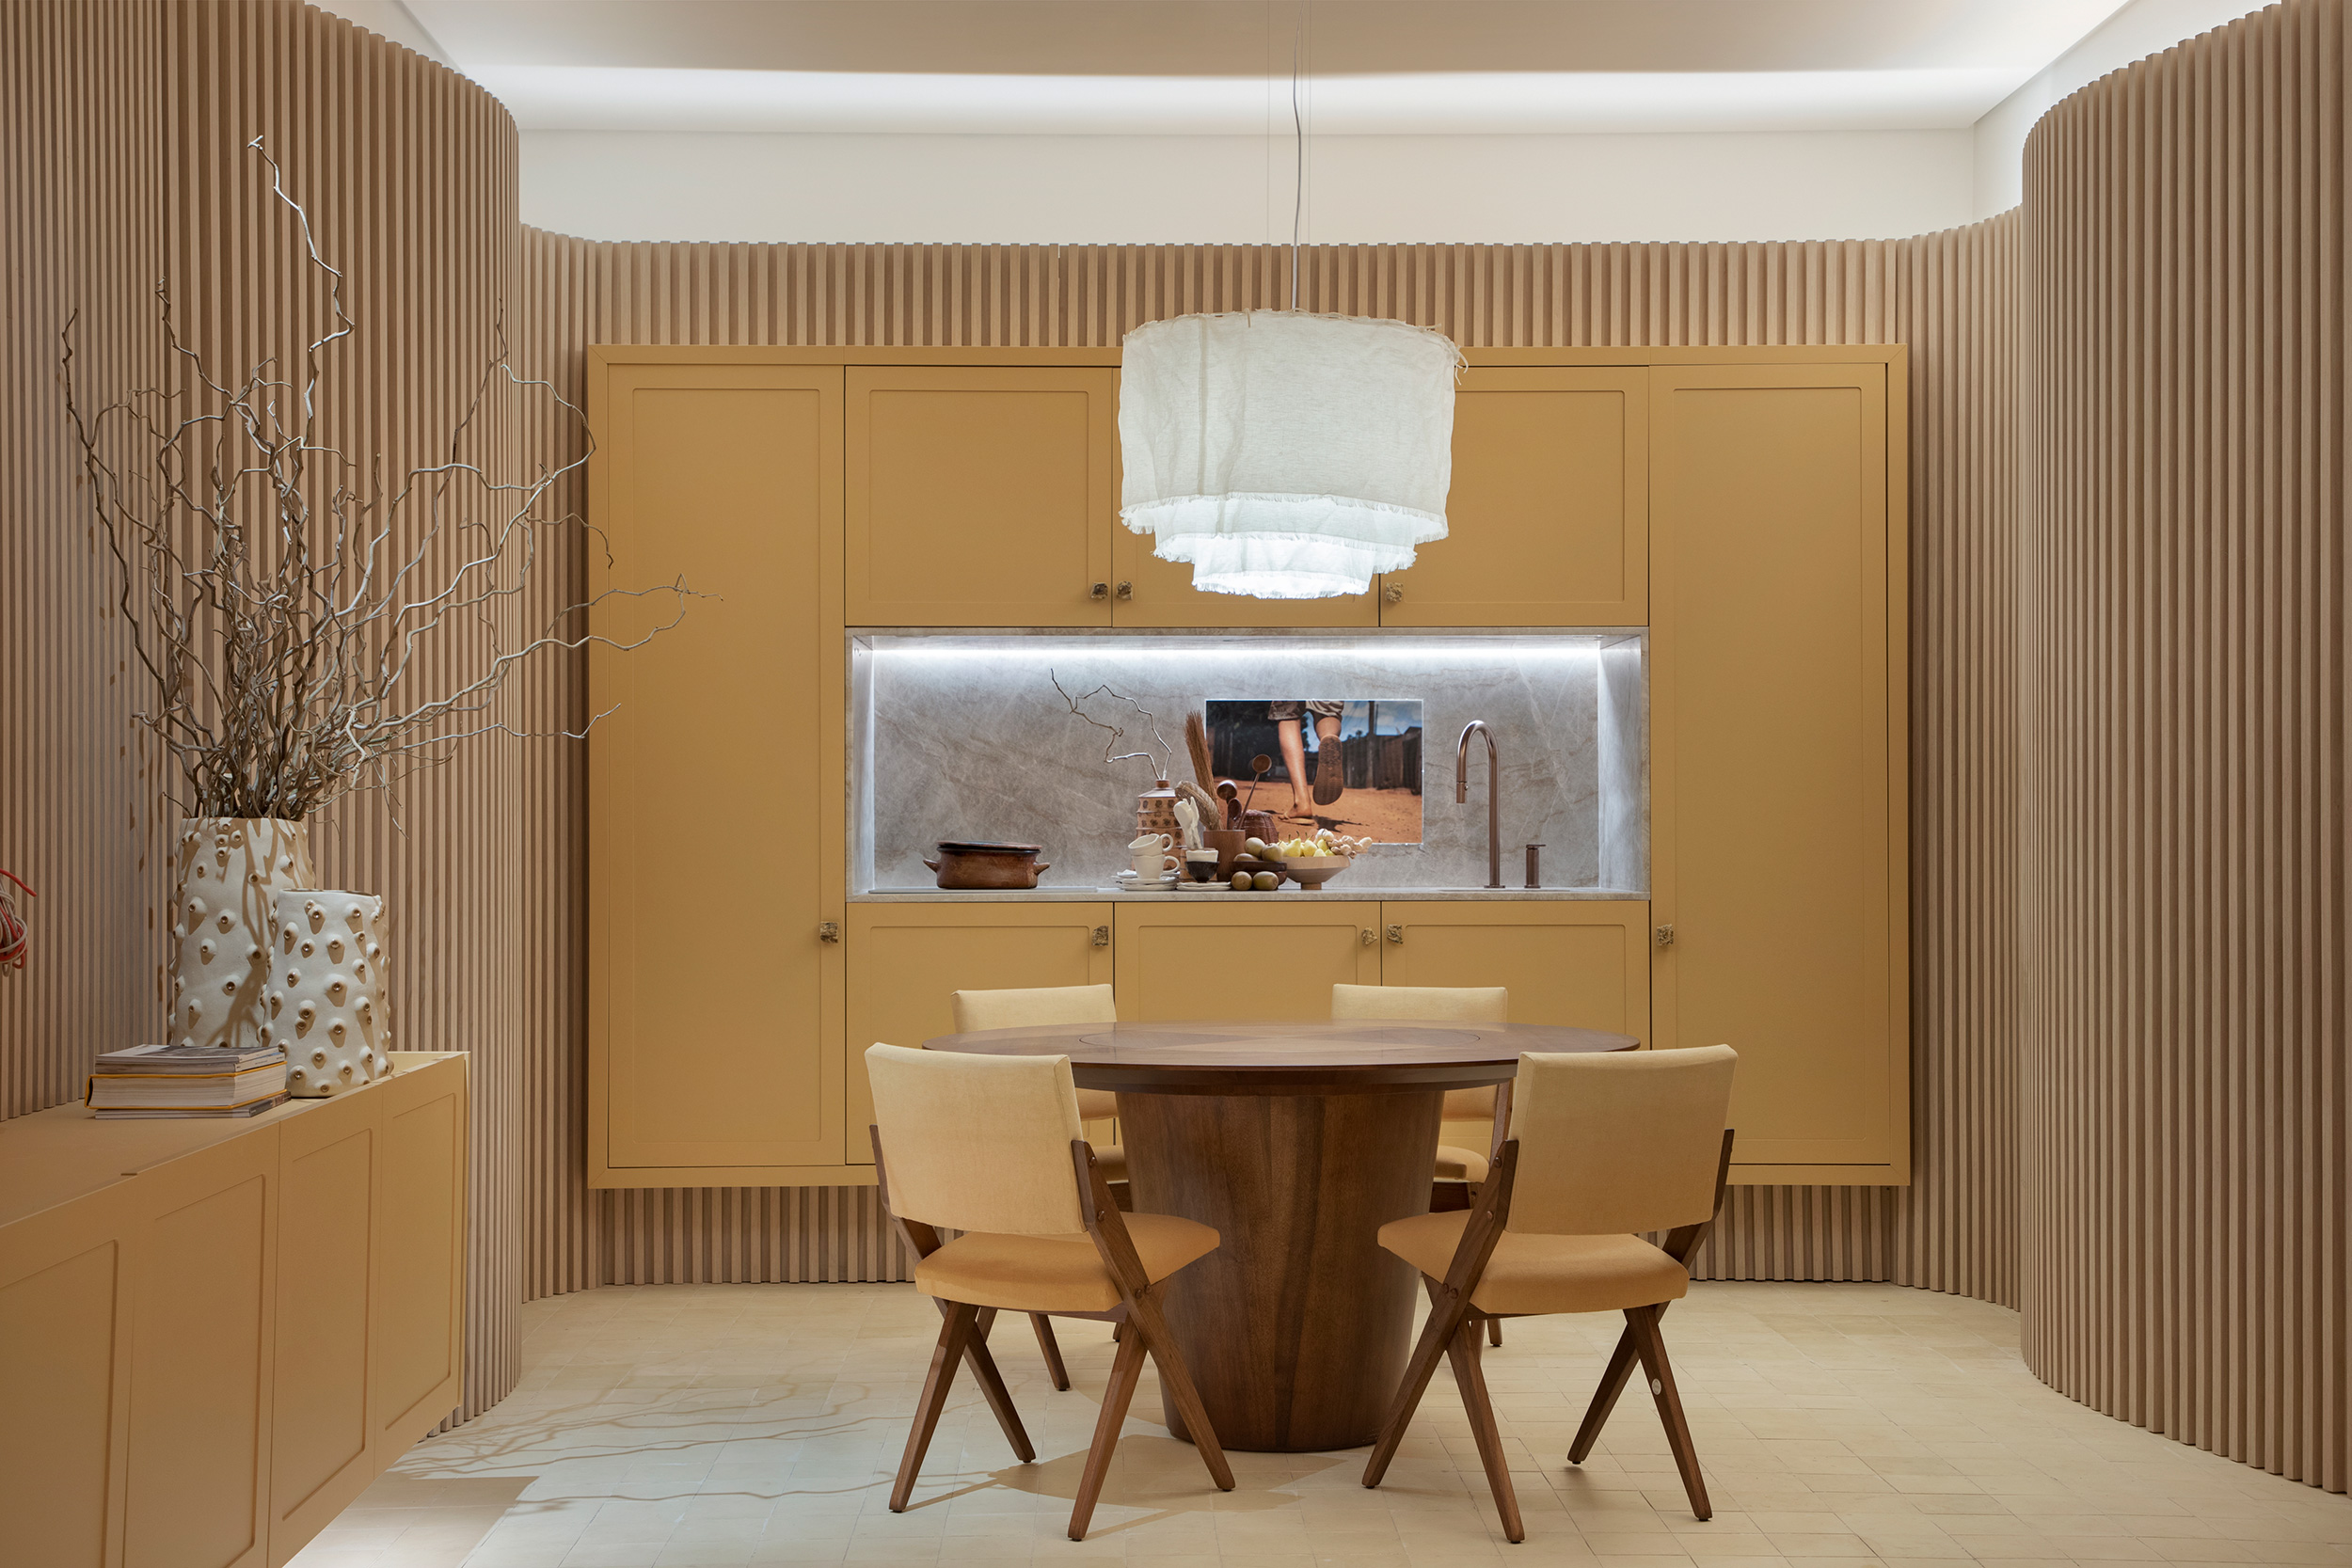 gabriel fernandes casacor sao paulo 2022 somos decoracao mostras design mesa cadeira cozinha ripado madeira